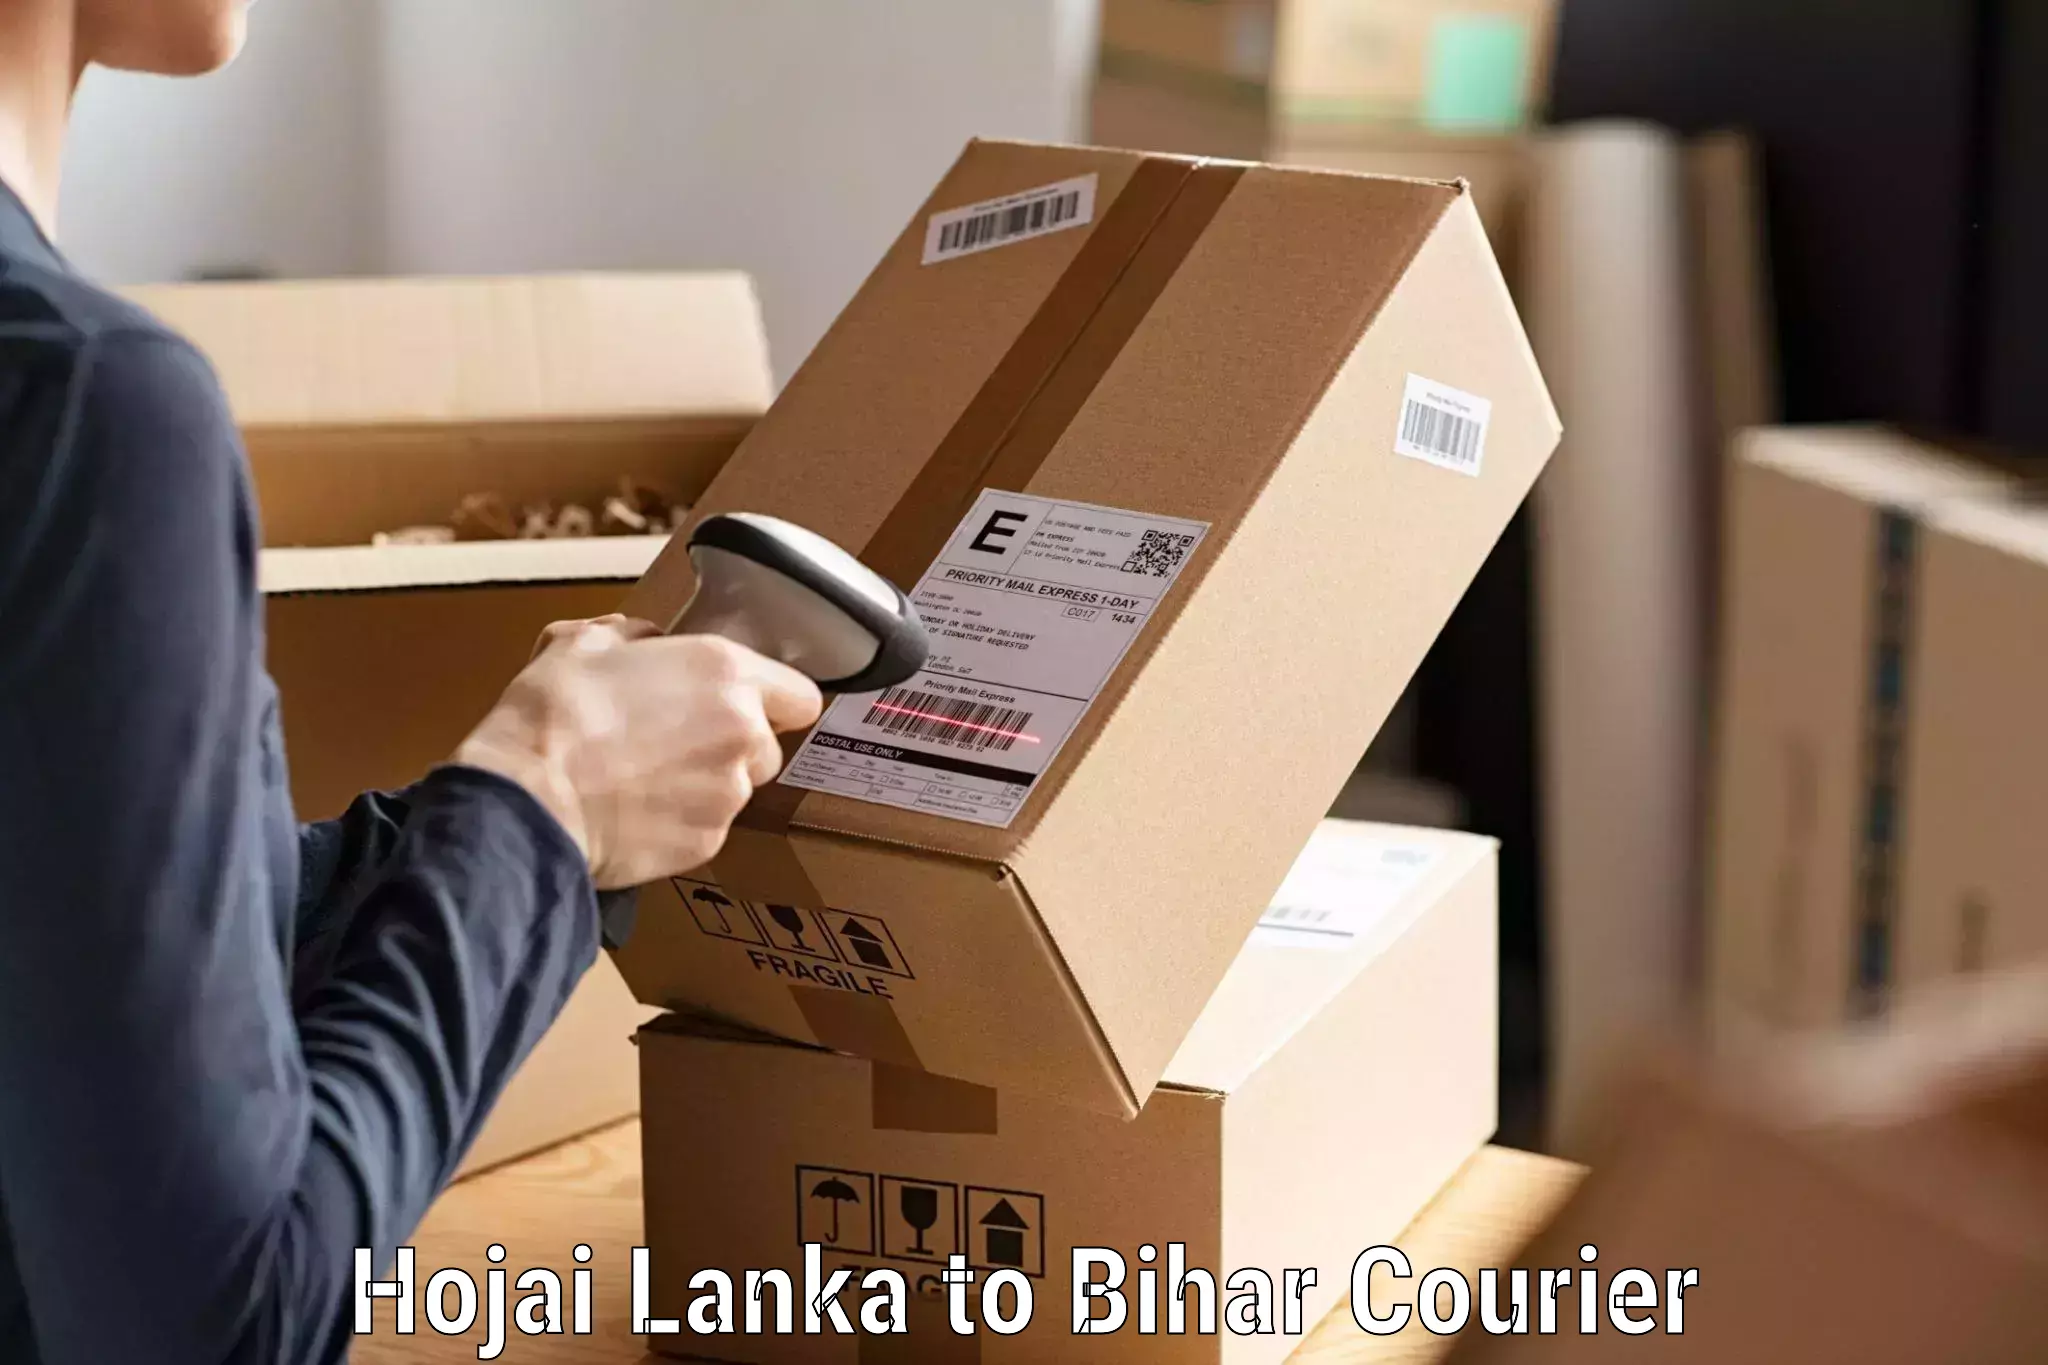 Professional courier handling Hojai Lanka to Daudnagar